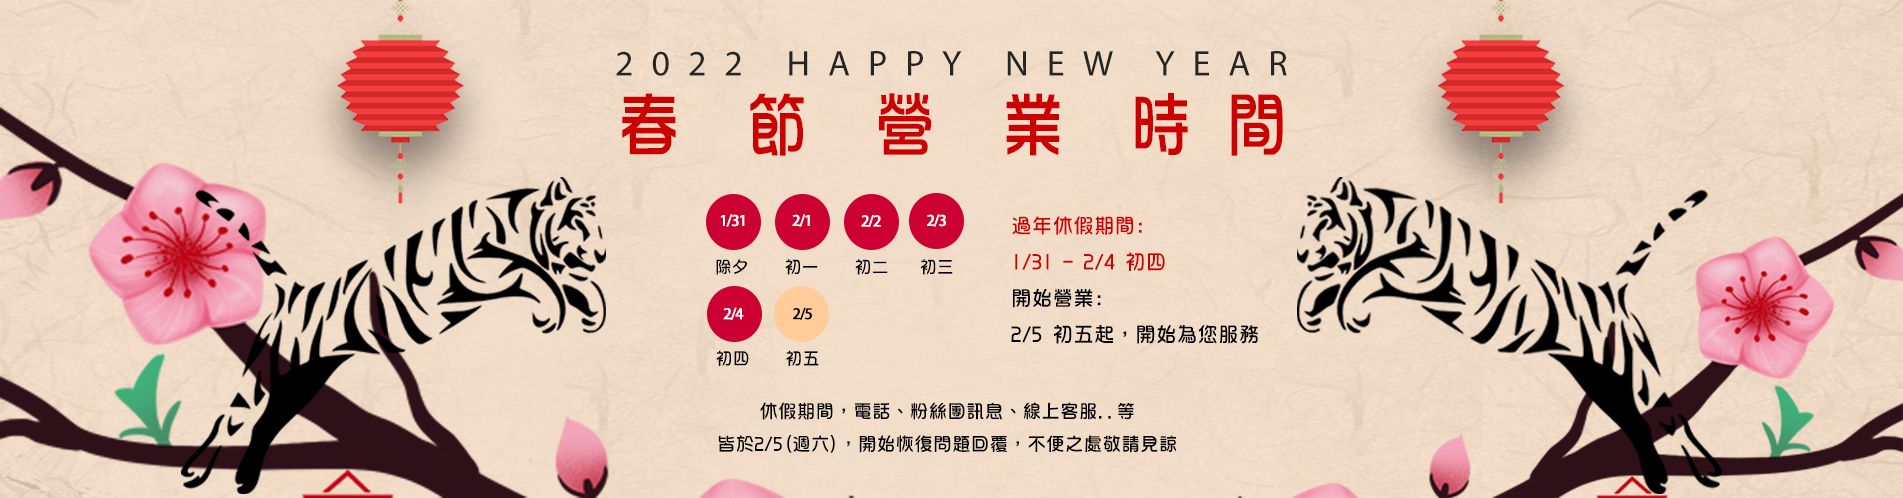 新宇3C - 恭祝新年快樂